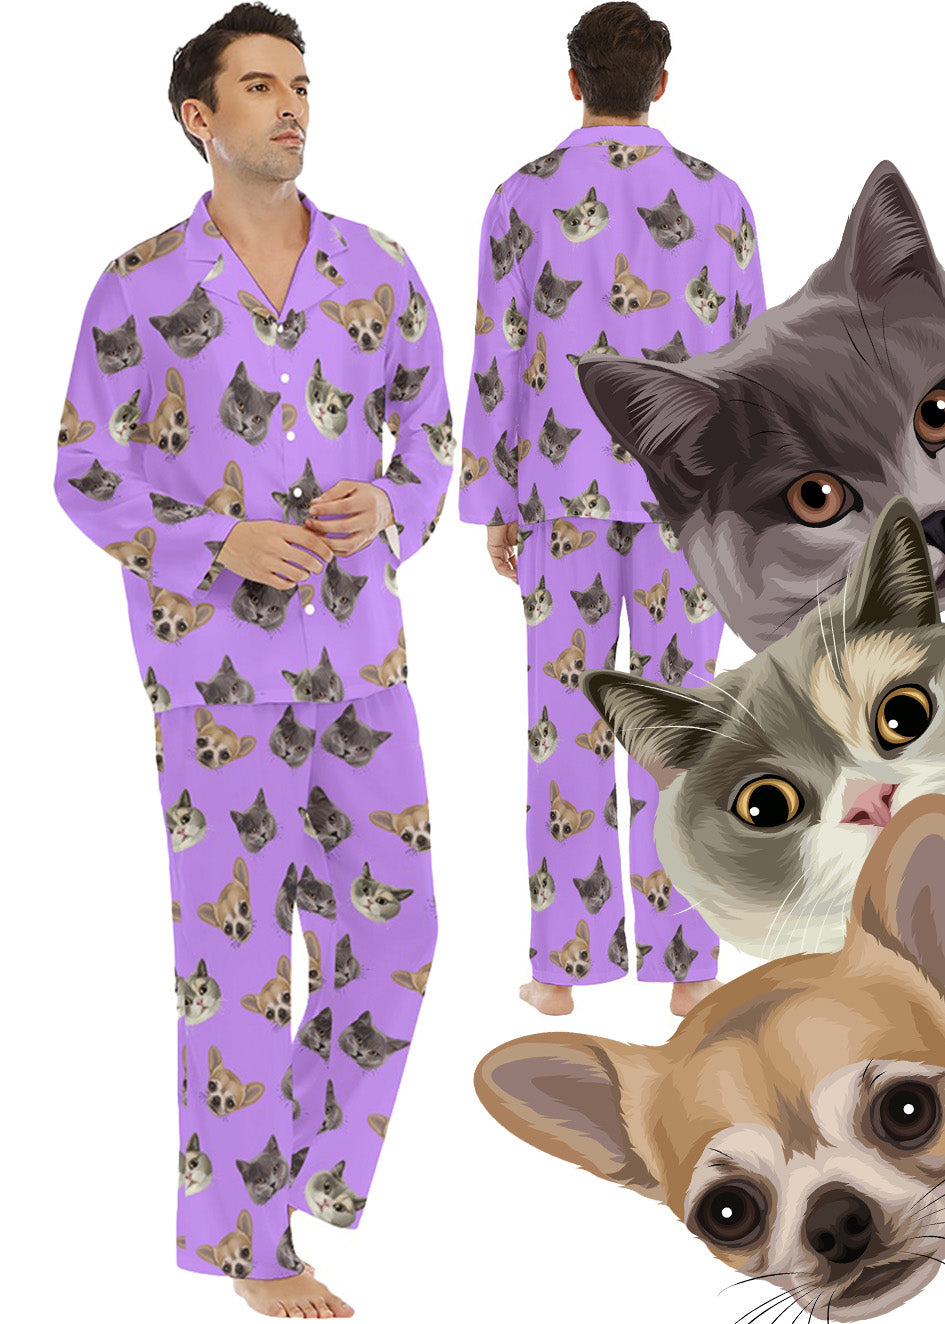 Custom Men's Long Pyjamas: Orig. Drawn Face Artwork (Dog, Cat, Human Face)